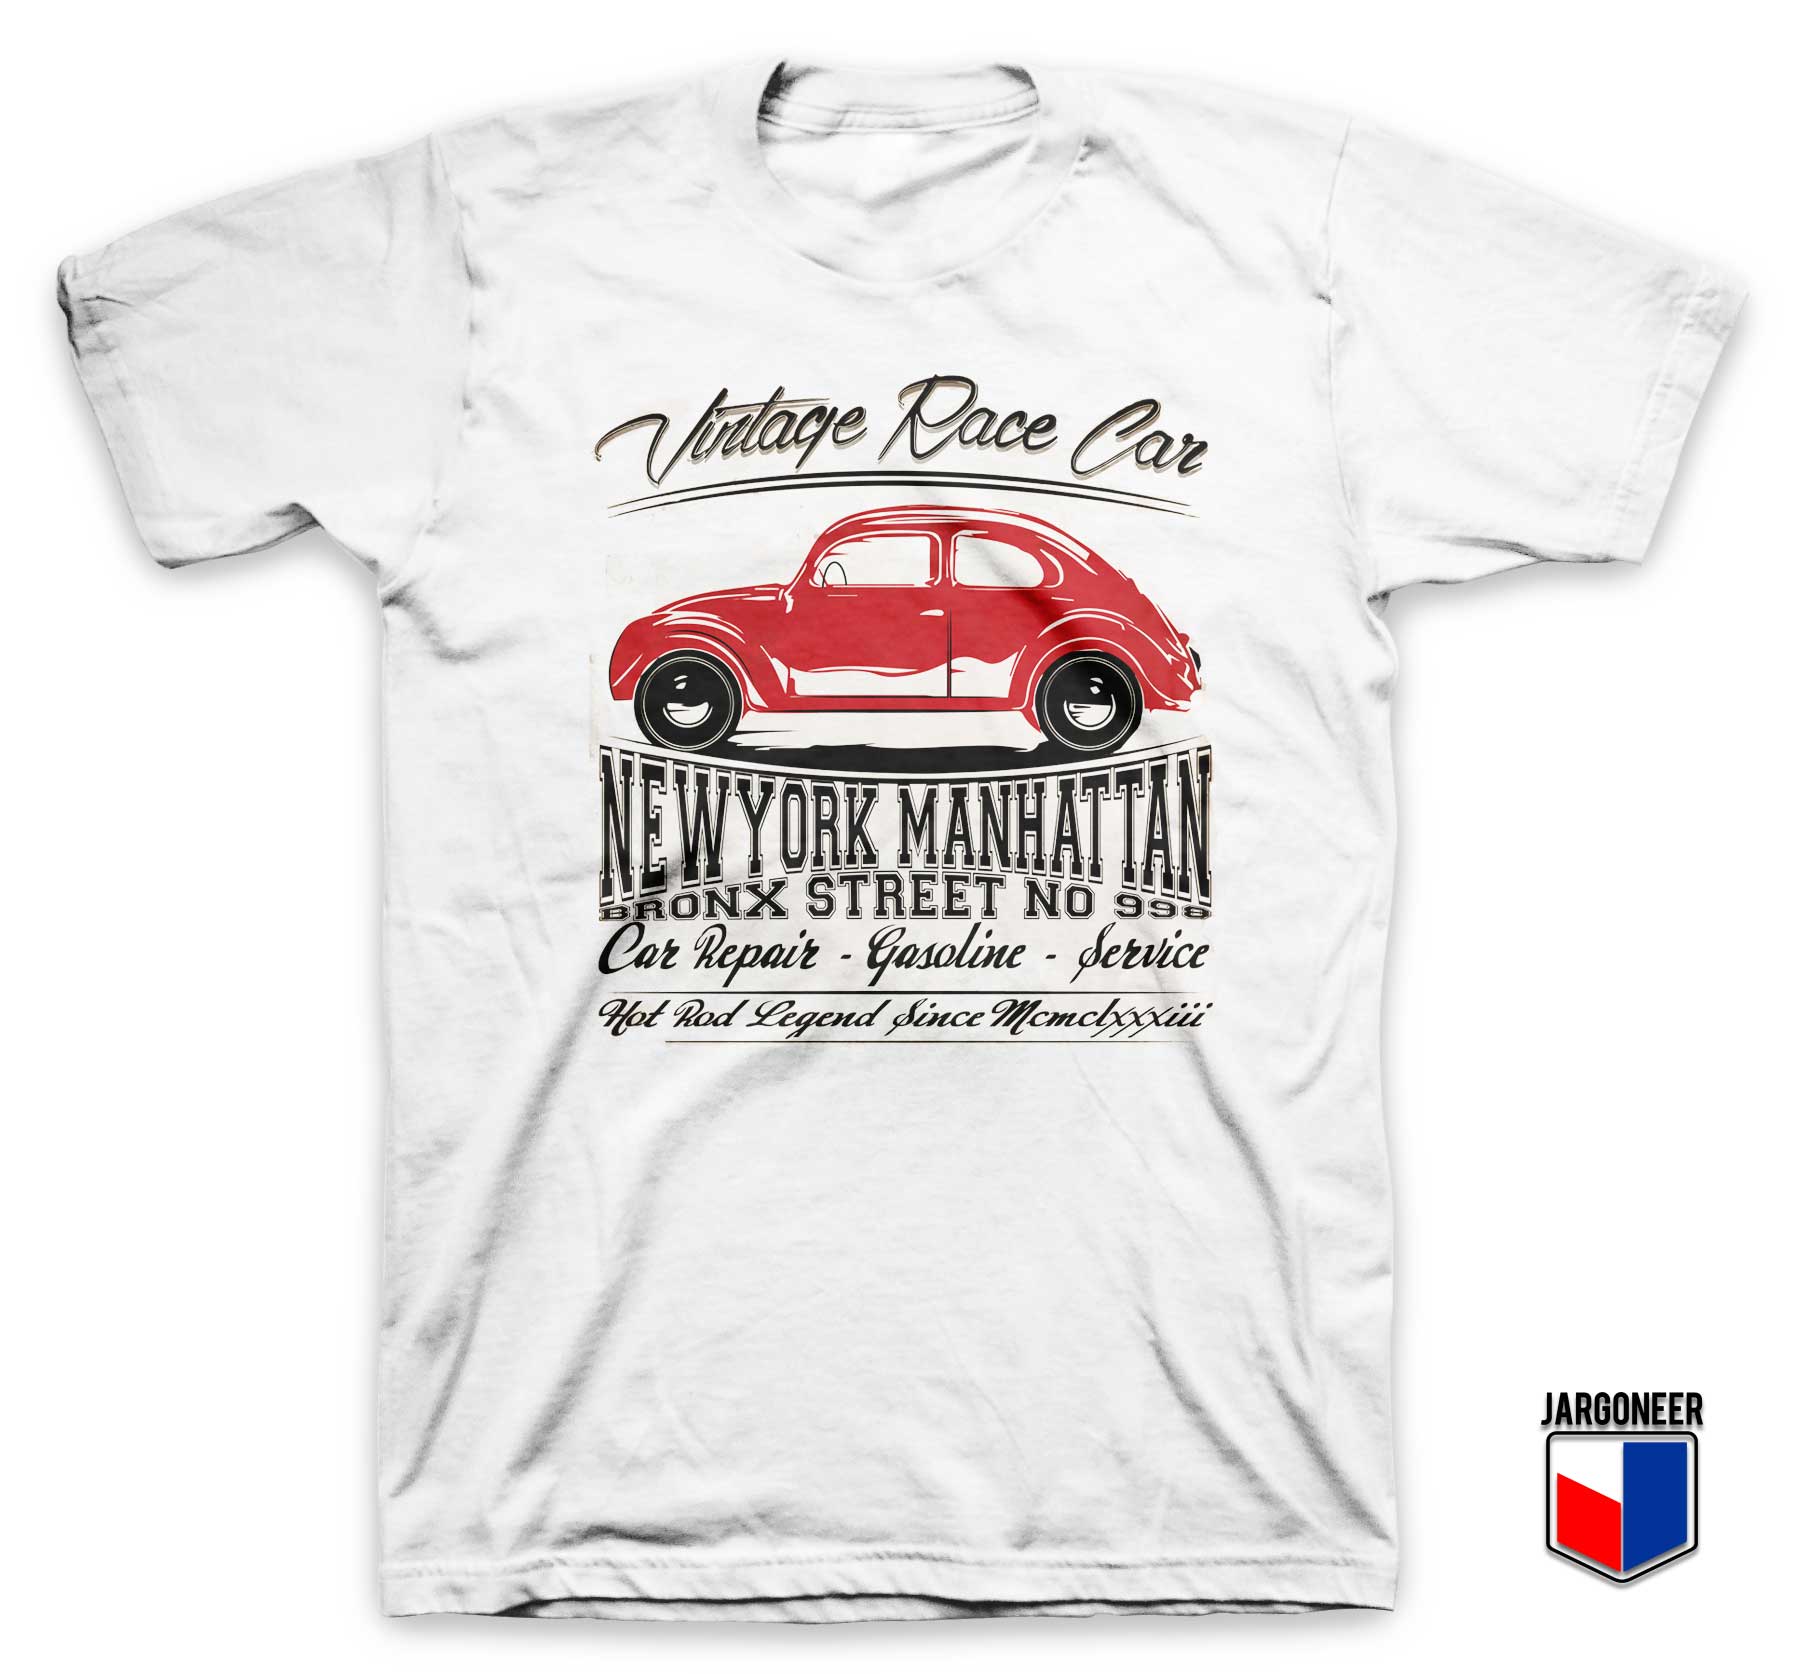 Vintage Race Car T Shirt - Shop Unique Graphic Cool Shirt Designs